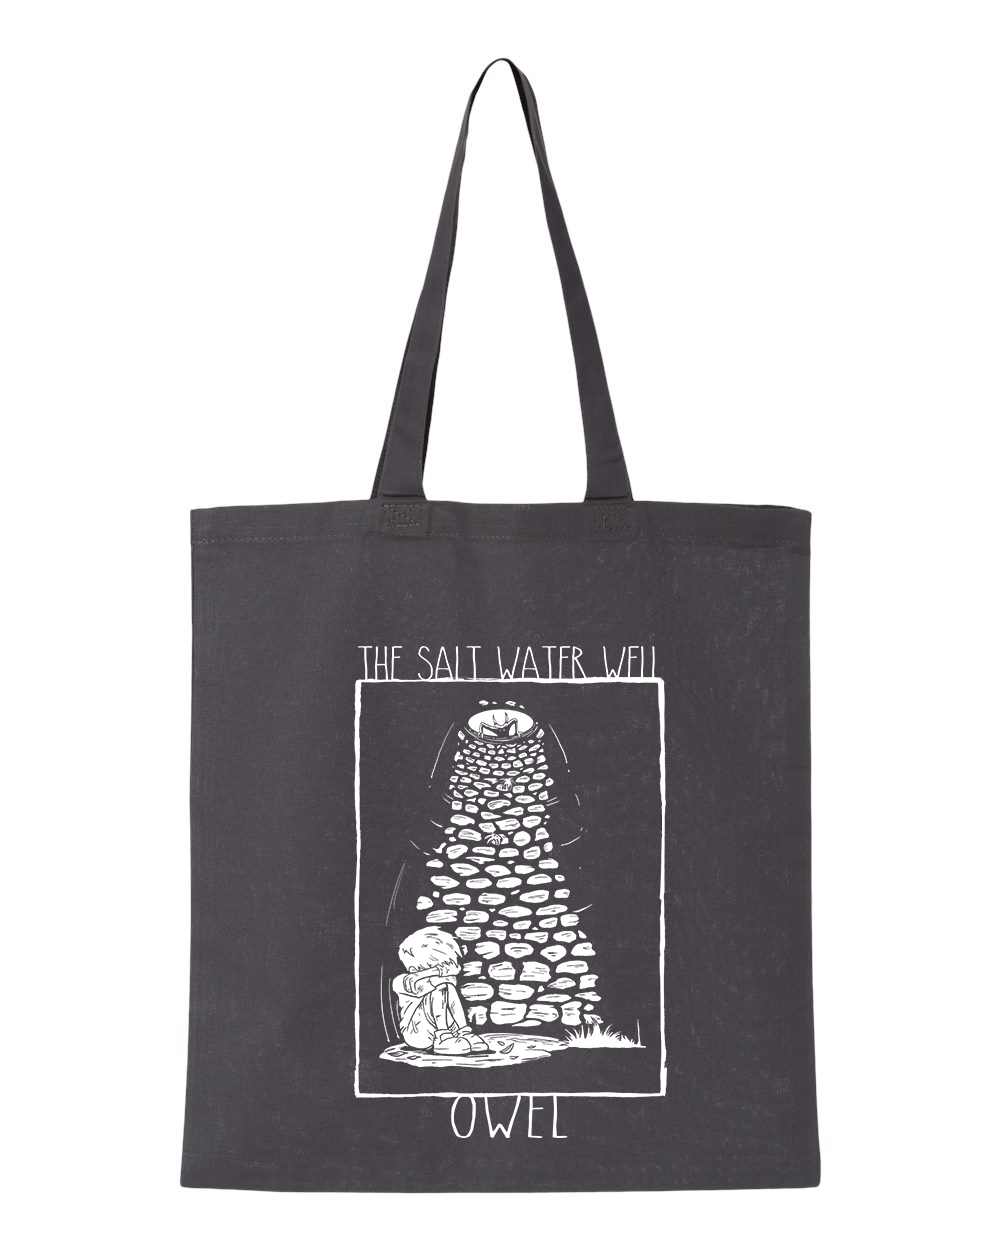 OWEL : The Salt Water Well Tote Bag